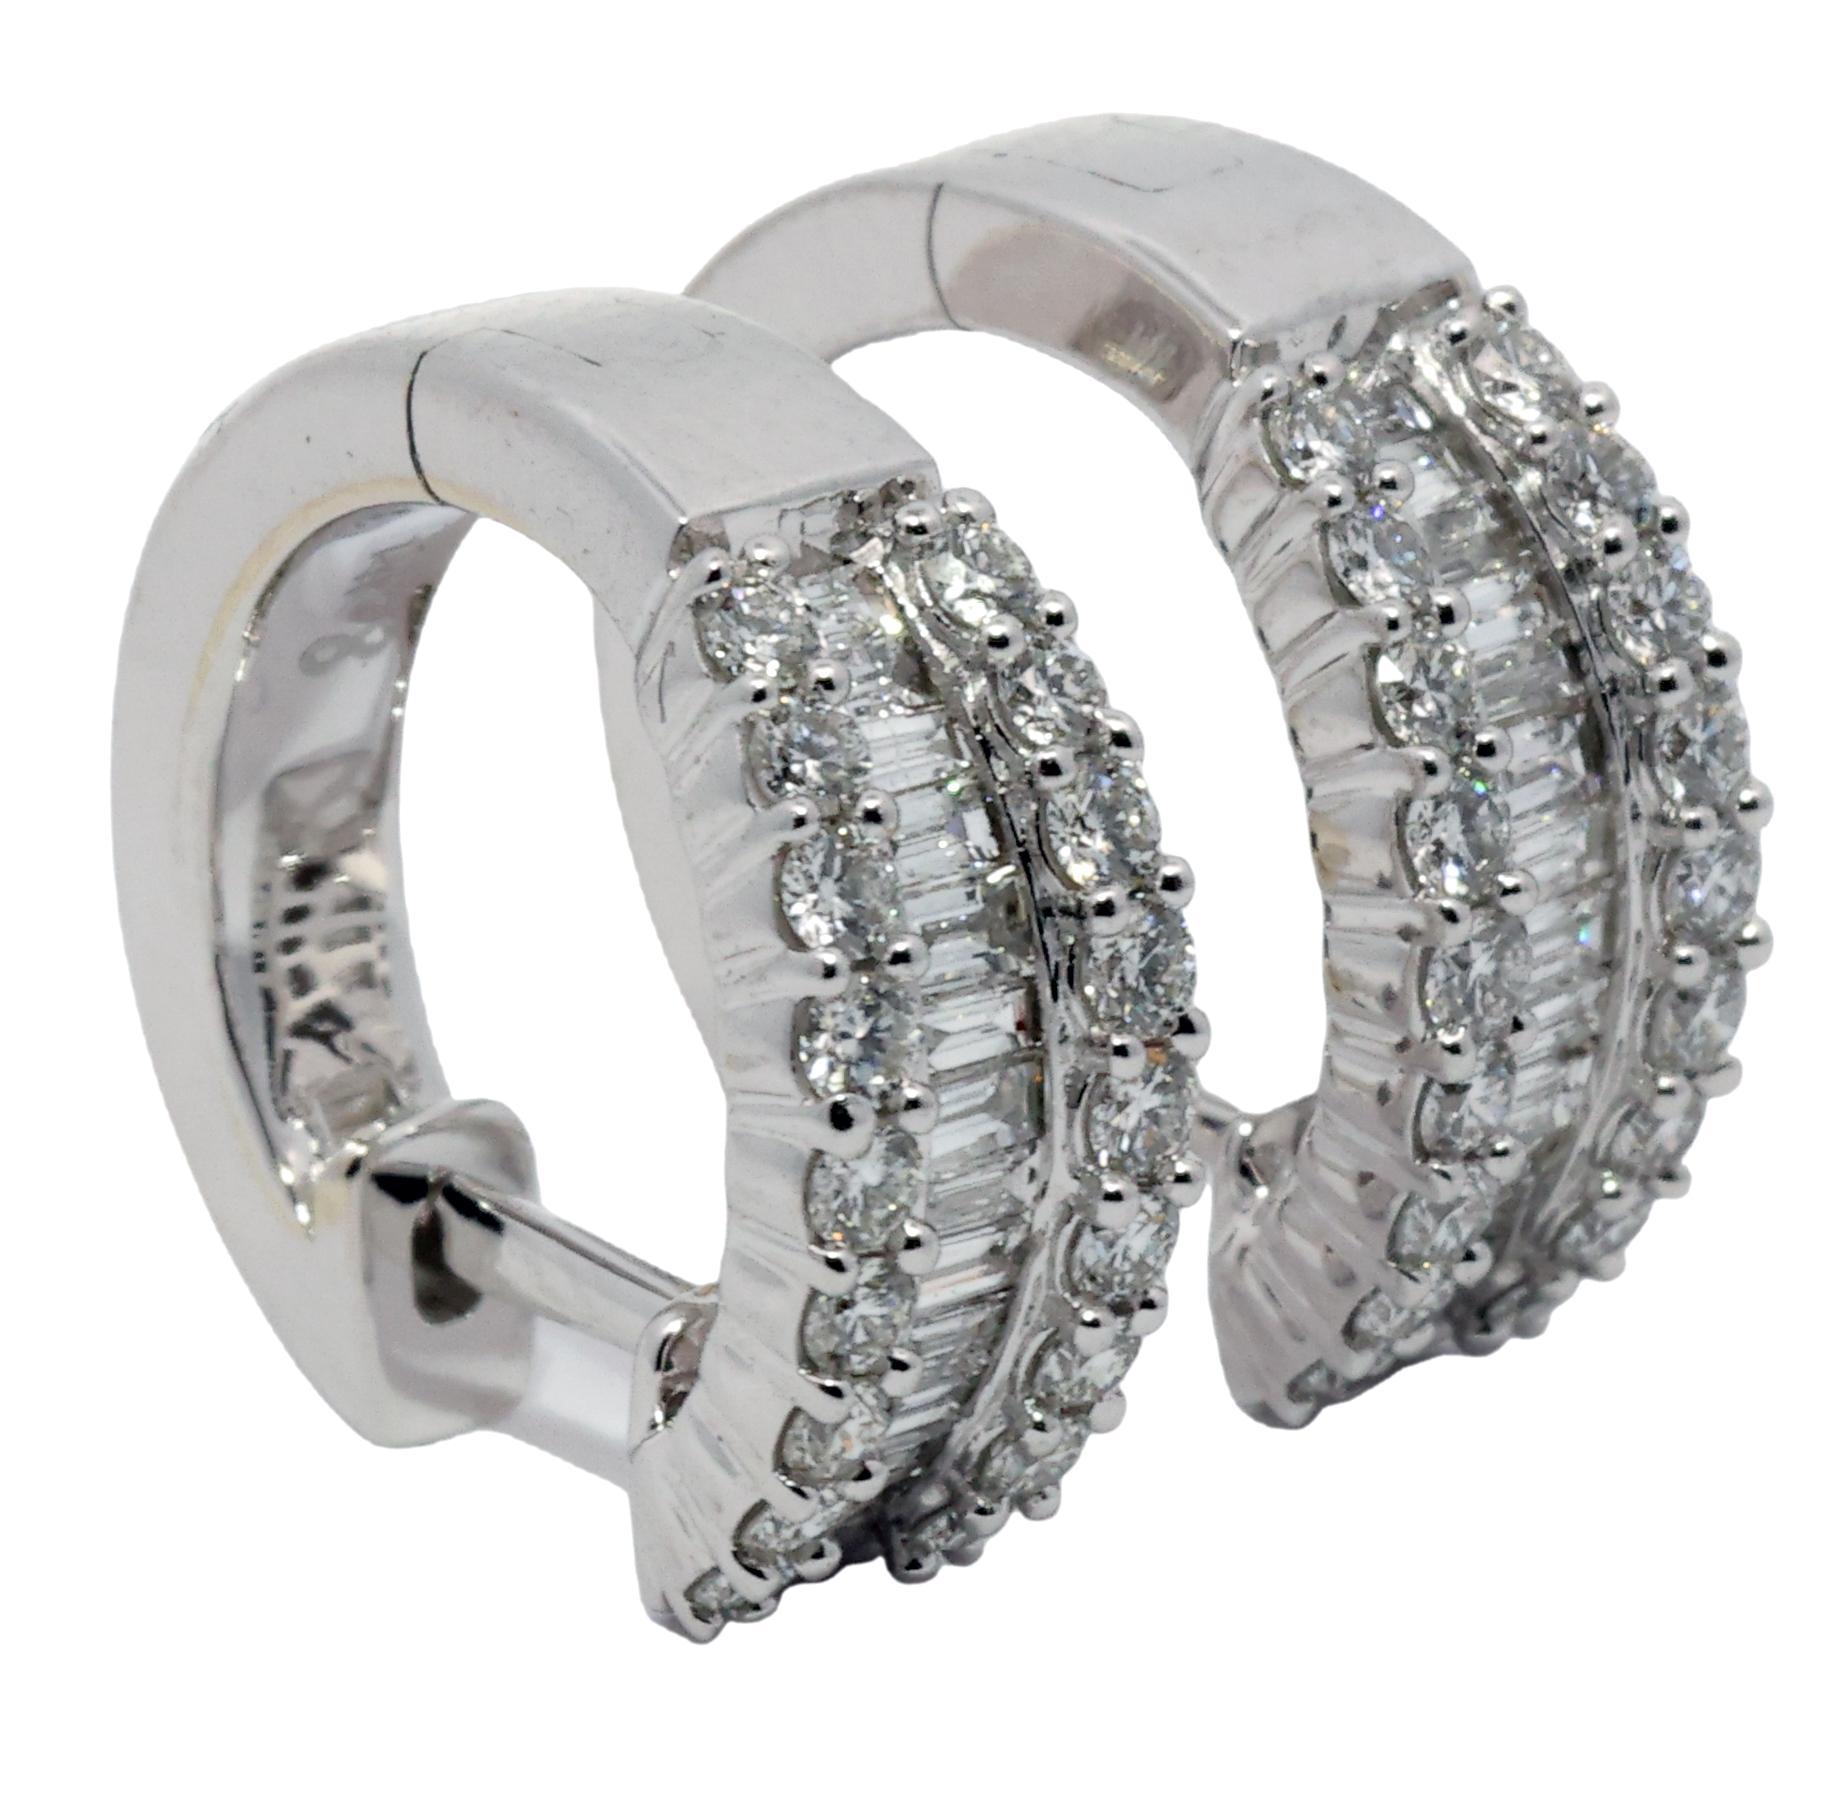 Eine zeitlose Verkörperung von Eleganz - unsere 3-reihigen Mini-Diamantohrringe in Weißgold. Diese exquisiten Ohrringe definieren Raffinesse neu. Sie sind ein zartes und doch schillerndes Accessoire, das klassisches Design und moderne